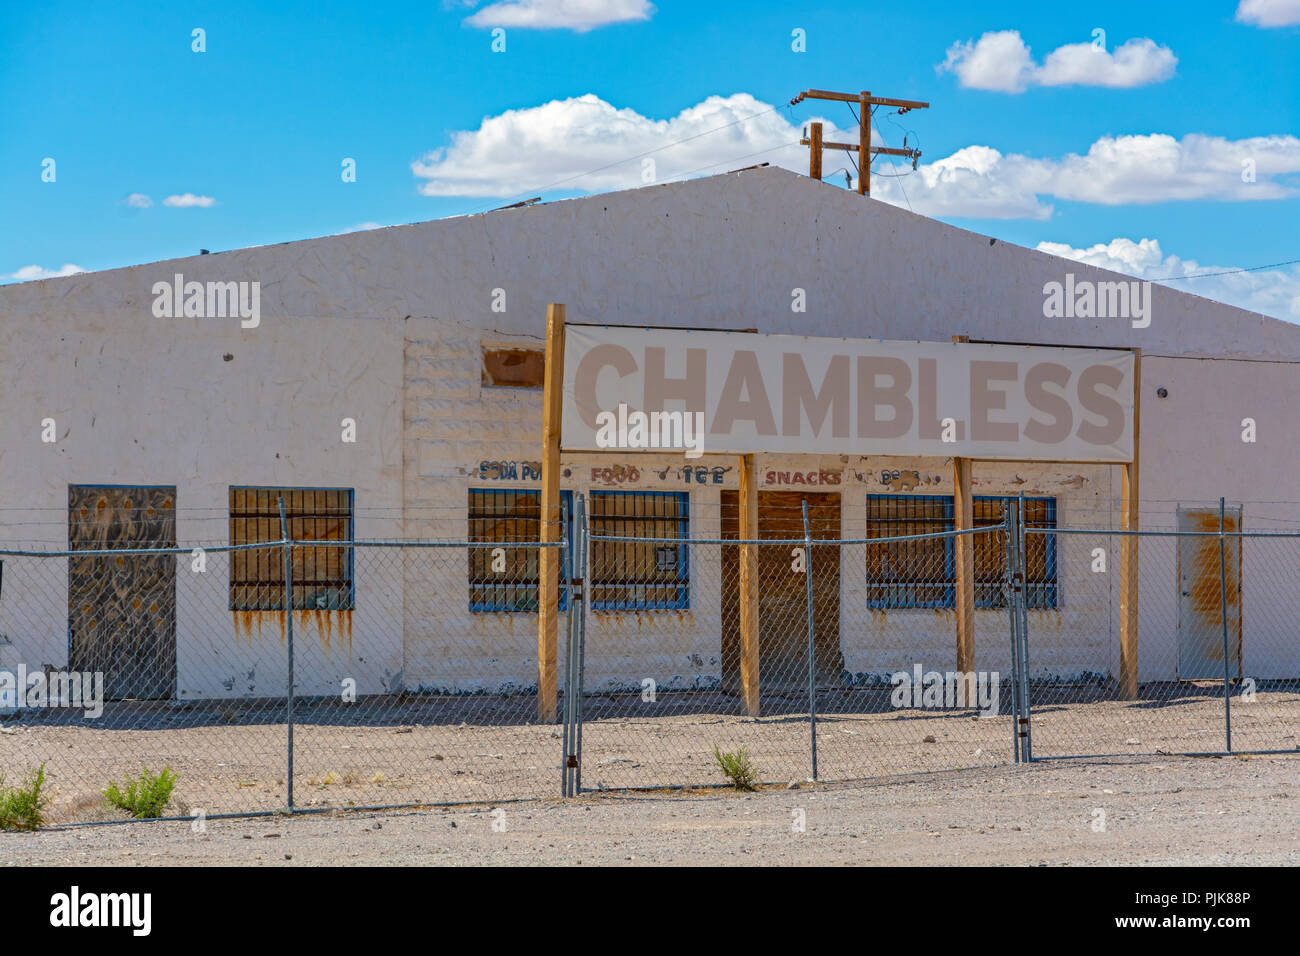 Désert de Mojave, Californie, Comté de San Bernardino, l'historique Route 66, Chambless Store, actuellement hors de l'entreprise Banque D'Images